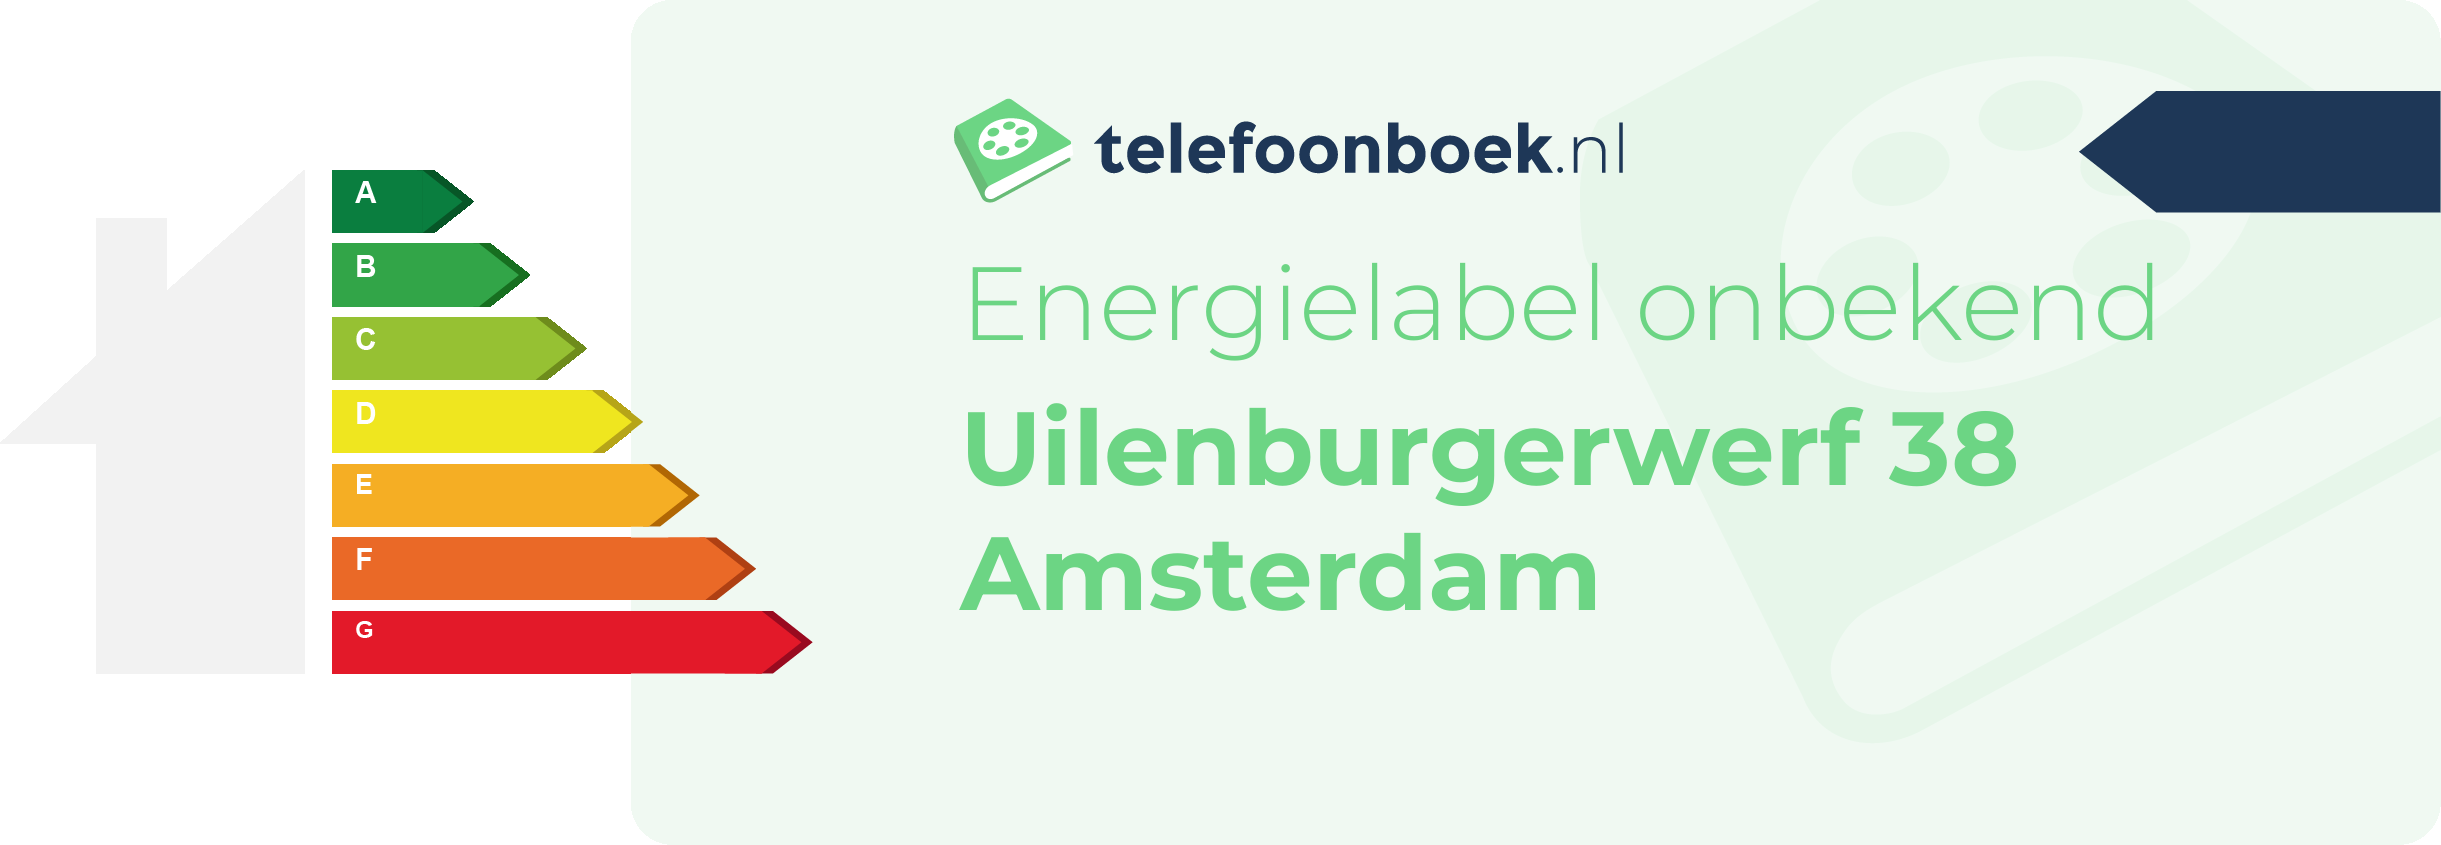 Energielabel Uilenburgerwerf 38 Amsterdam